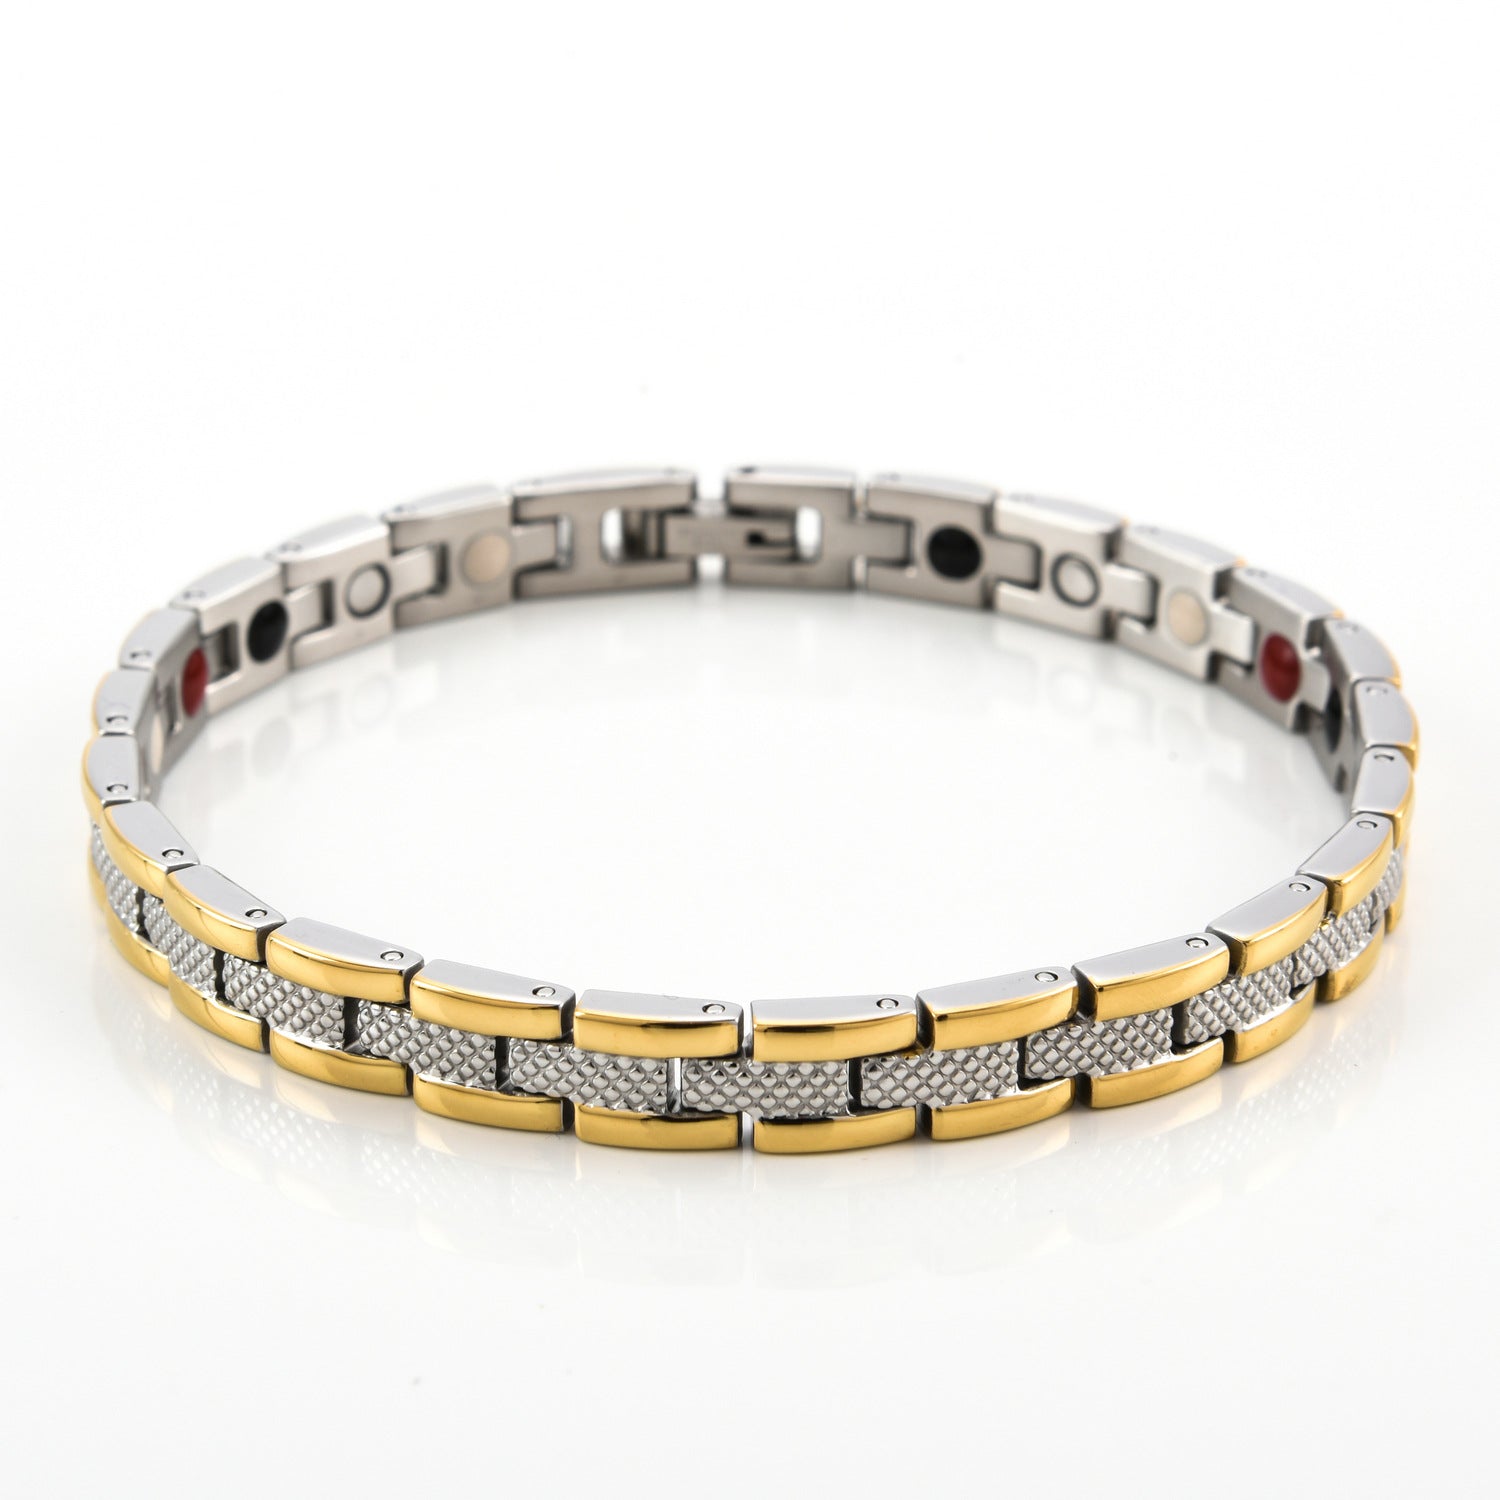 Women's Titanium Steel Energy Magnet Bracelet